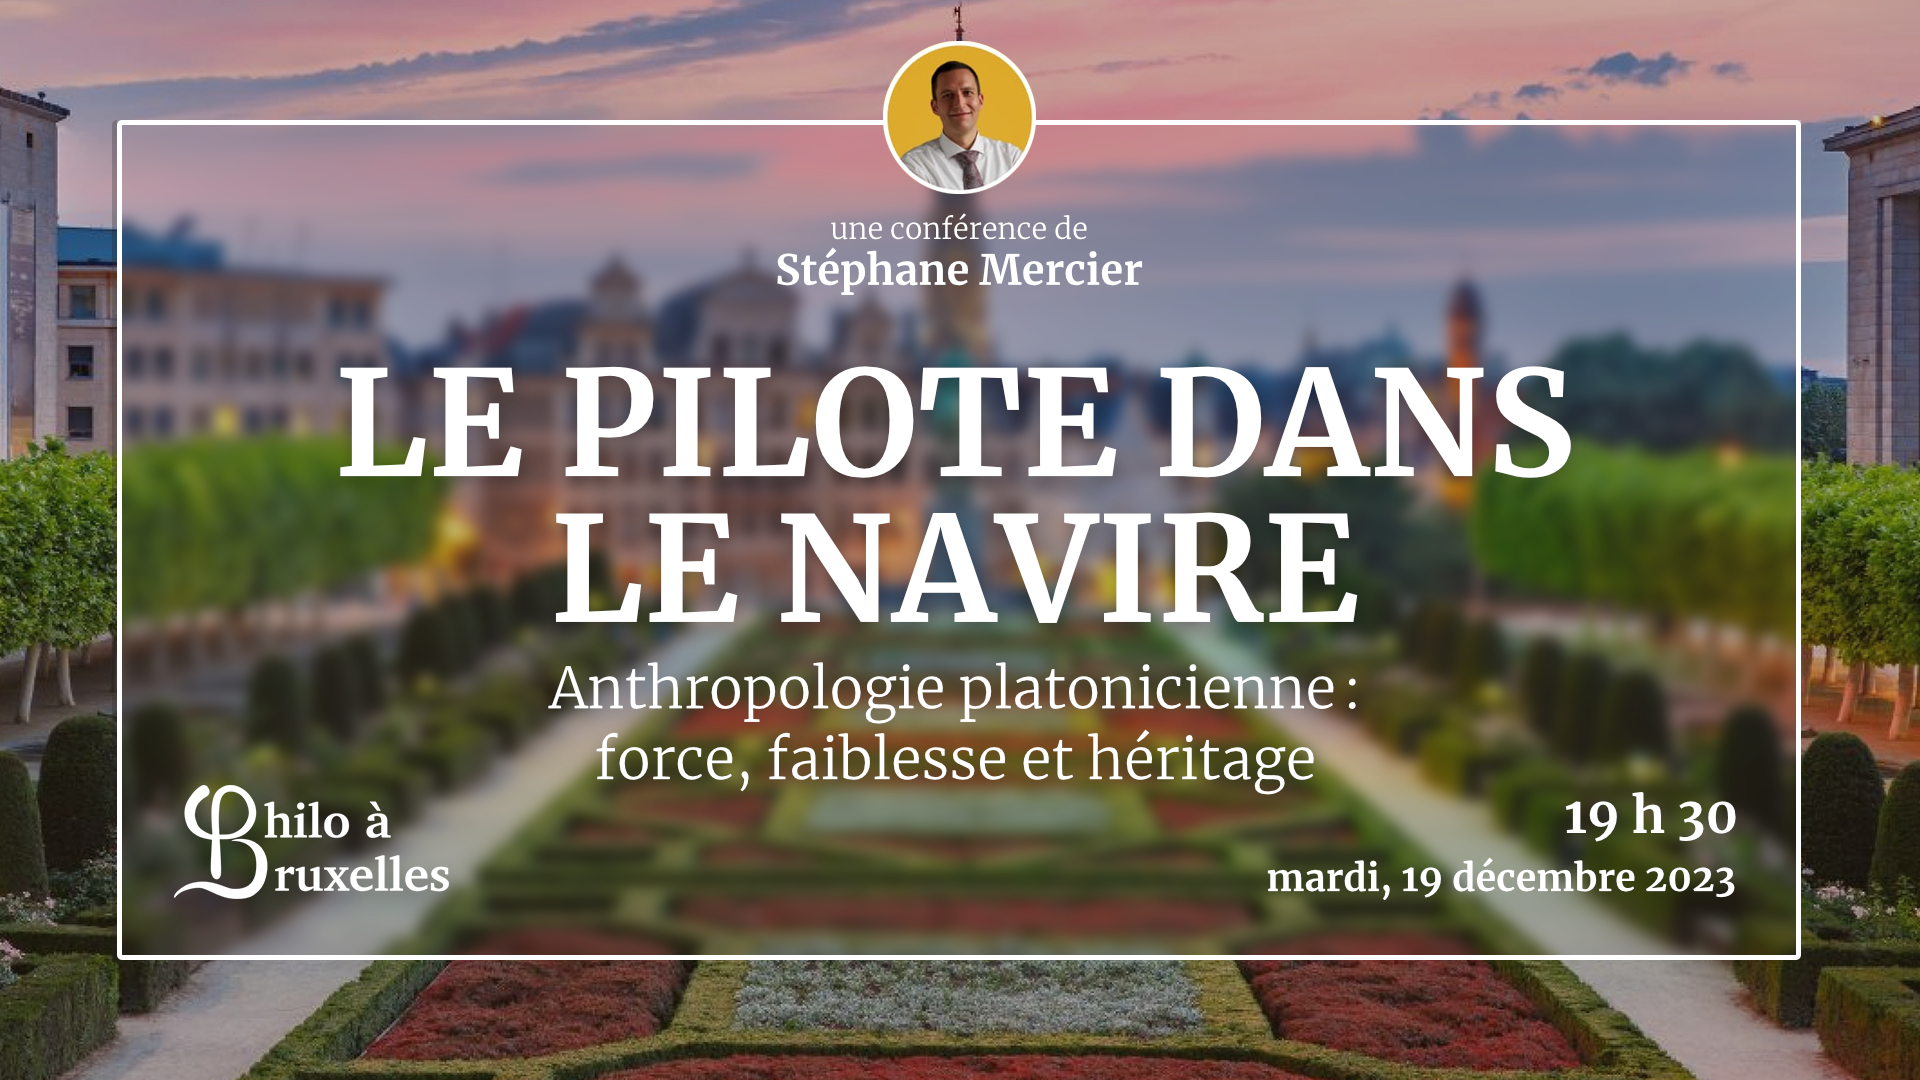 Conférence de Stéphane Mercier - Anthropologie platonicienne : force, faiblesse et héritage.